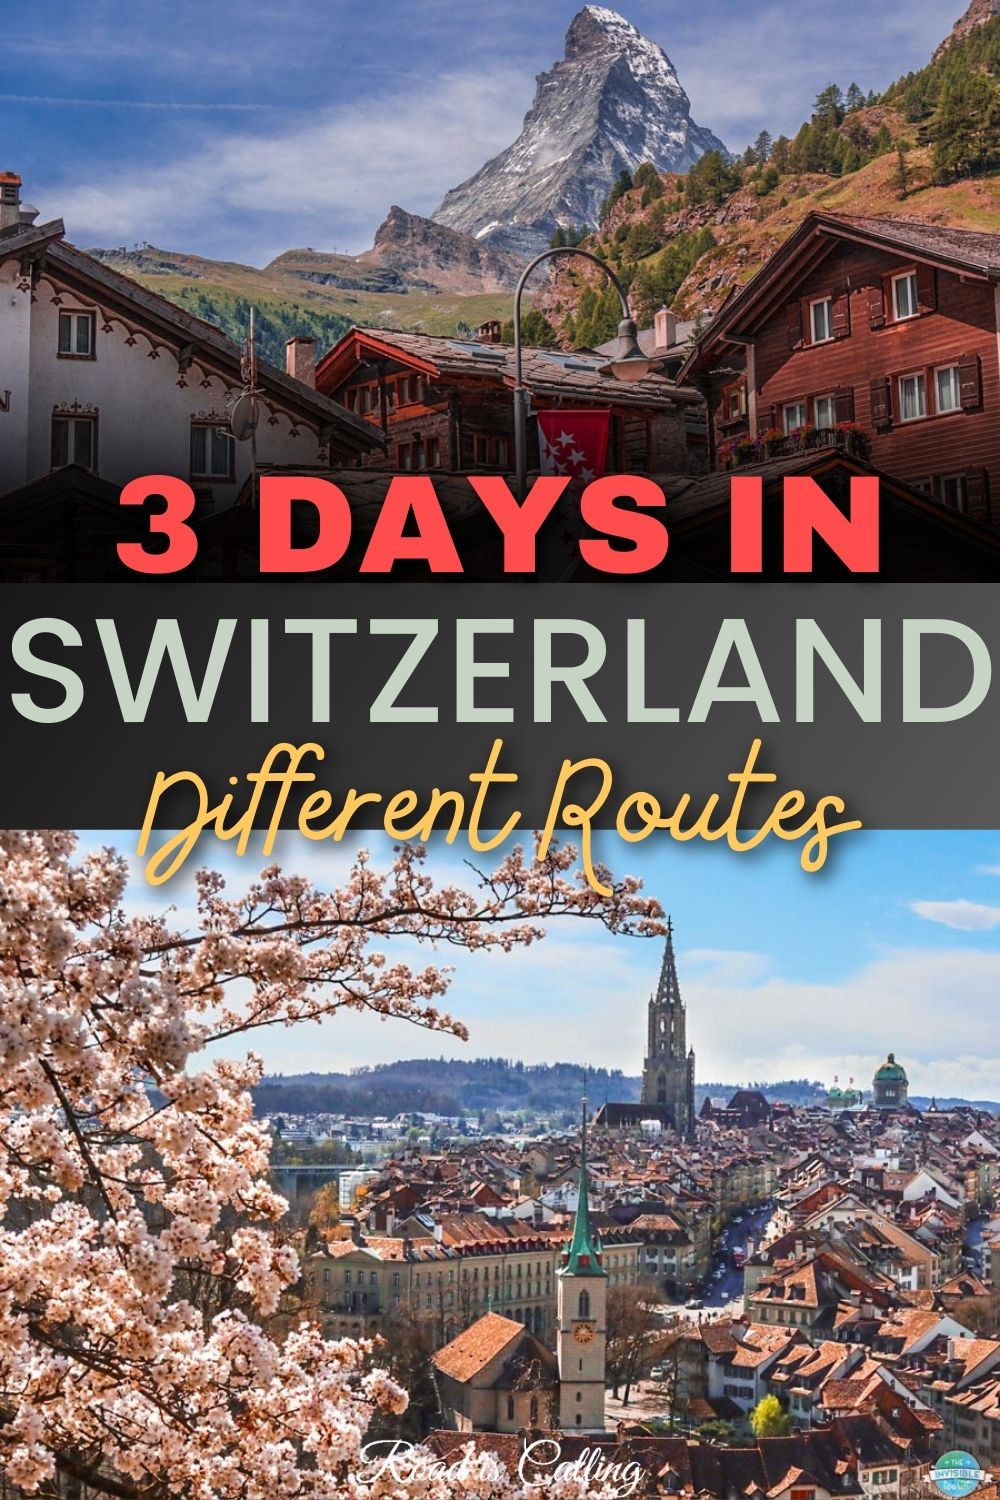 Switzerland in 3 days